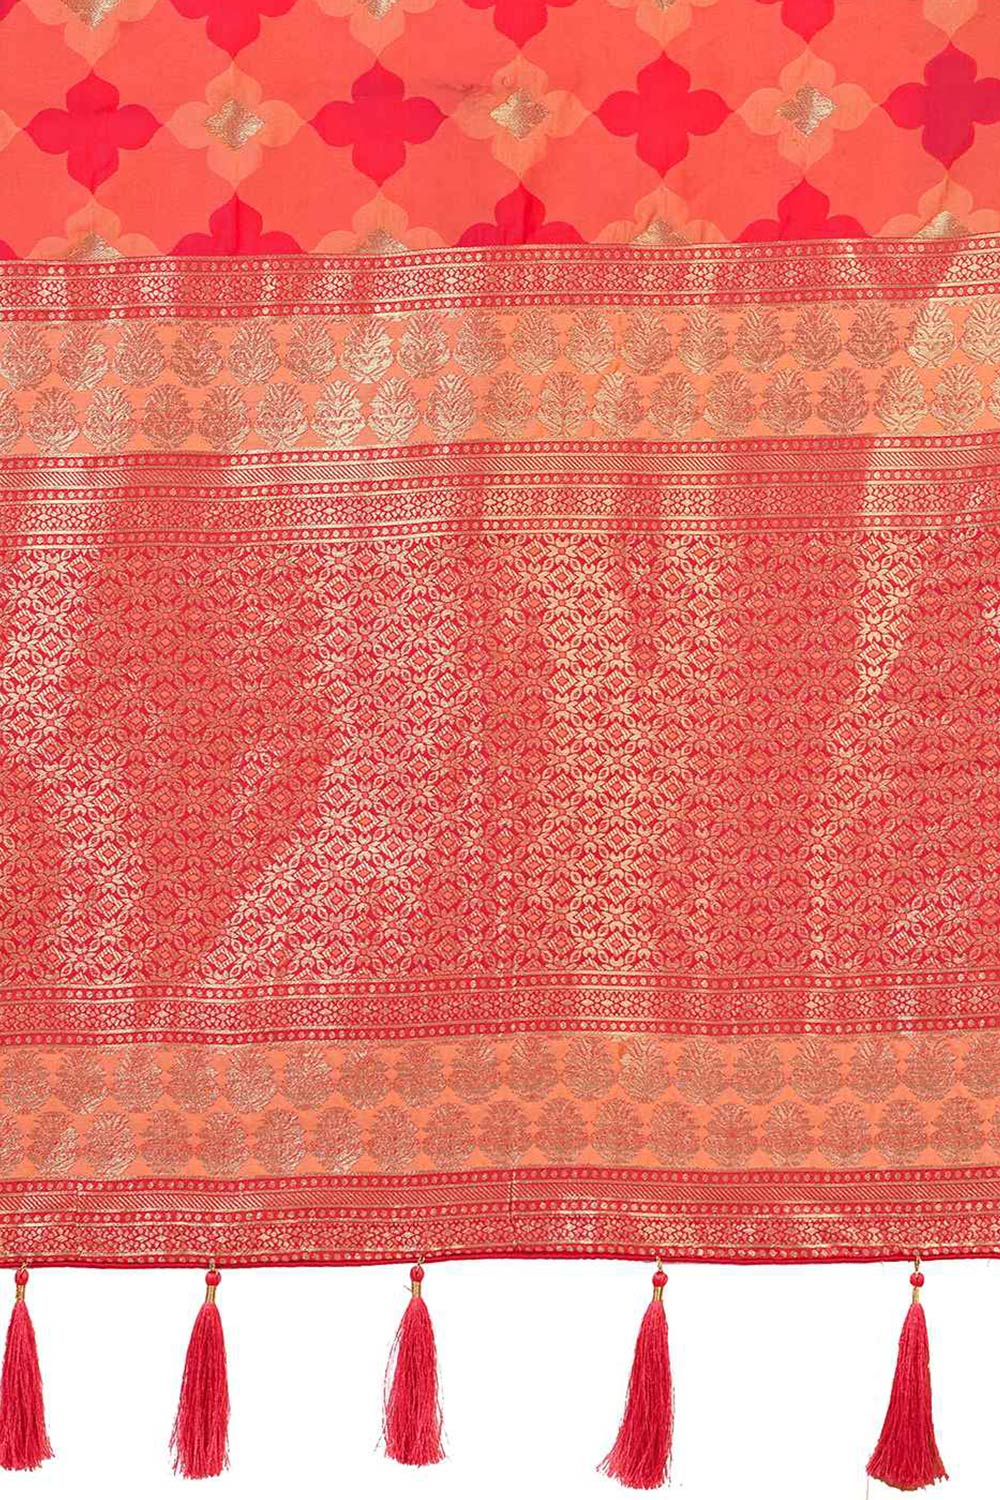 Peach Banarasi Silk woven Saree